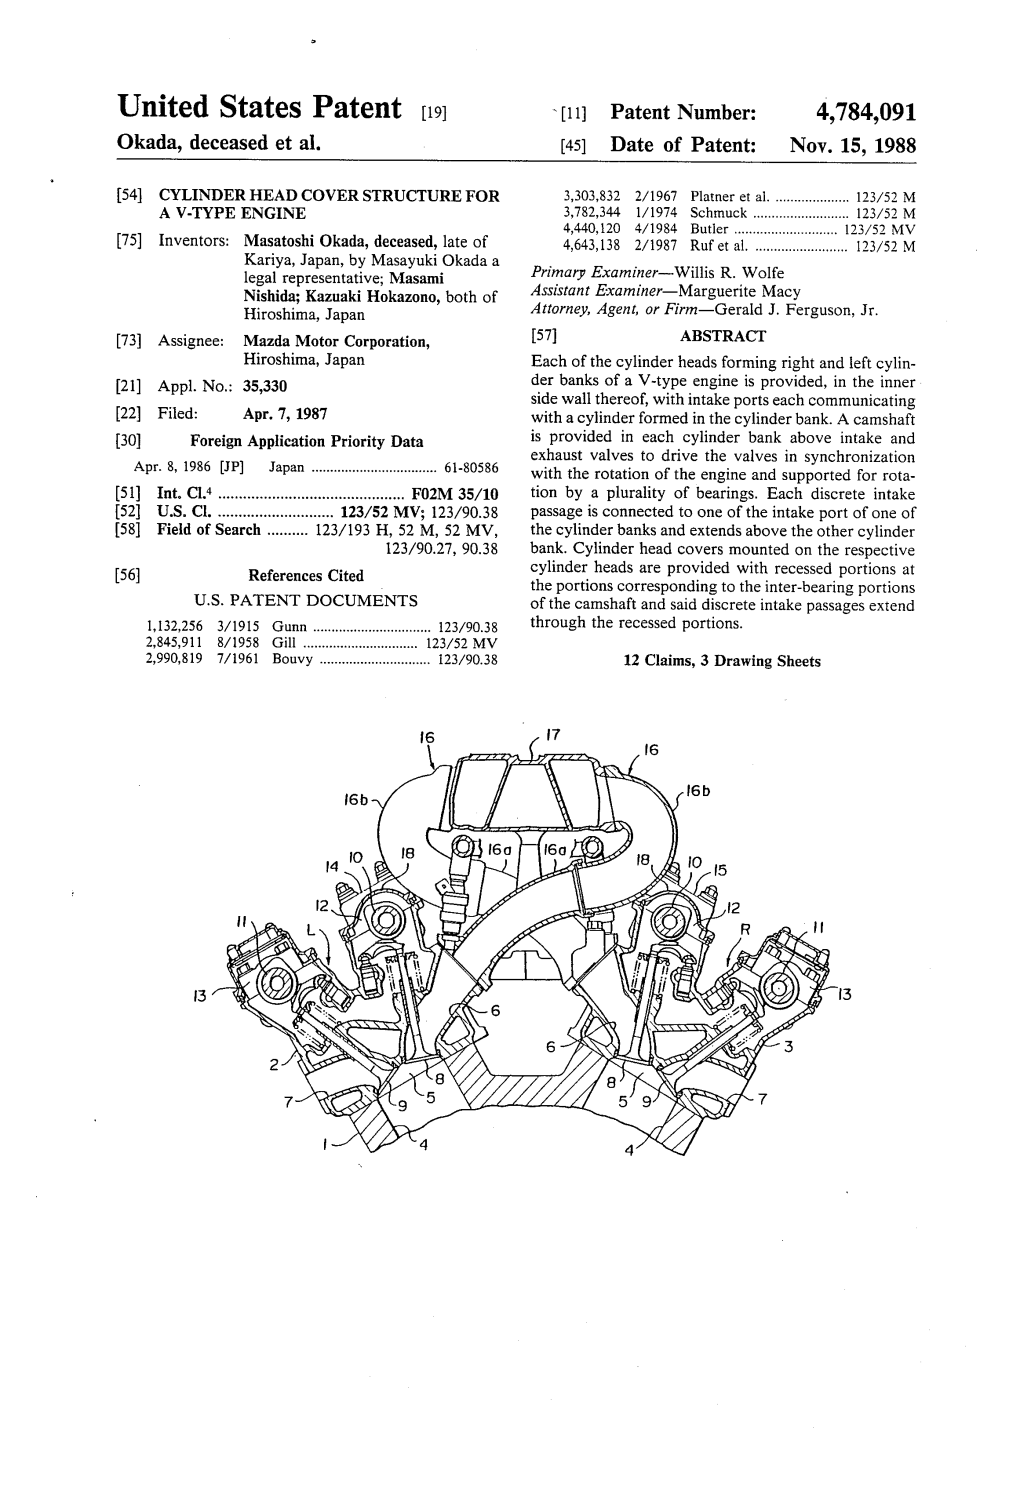 United States Patent (19) 11 Patent Number: 4,784,091 Okada, Deceased Et Al